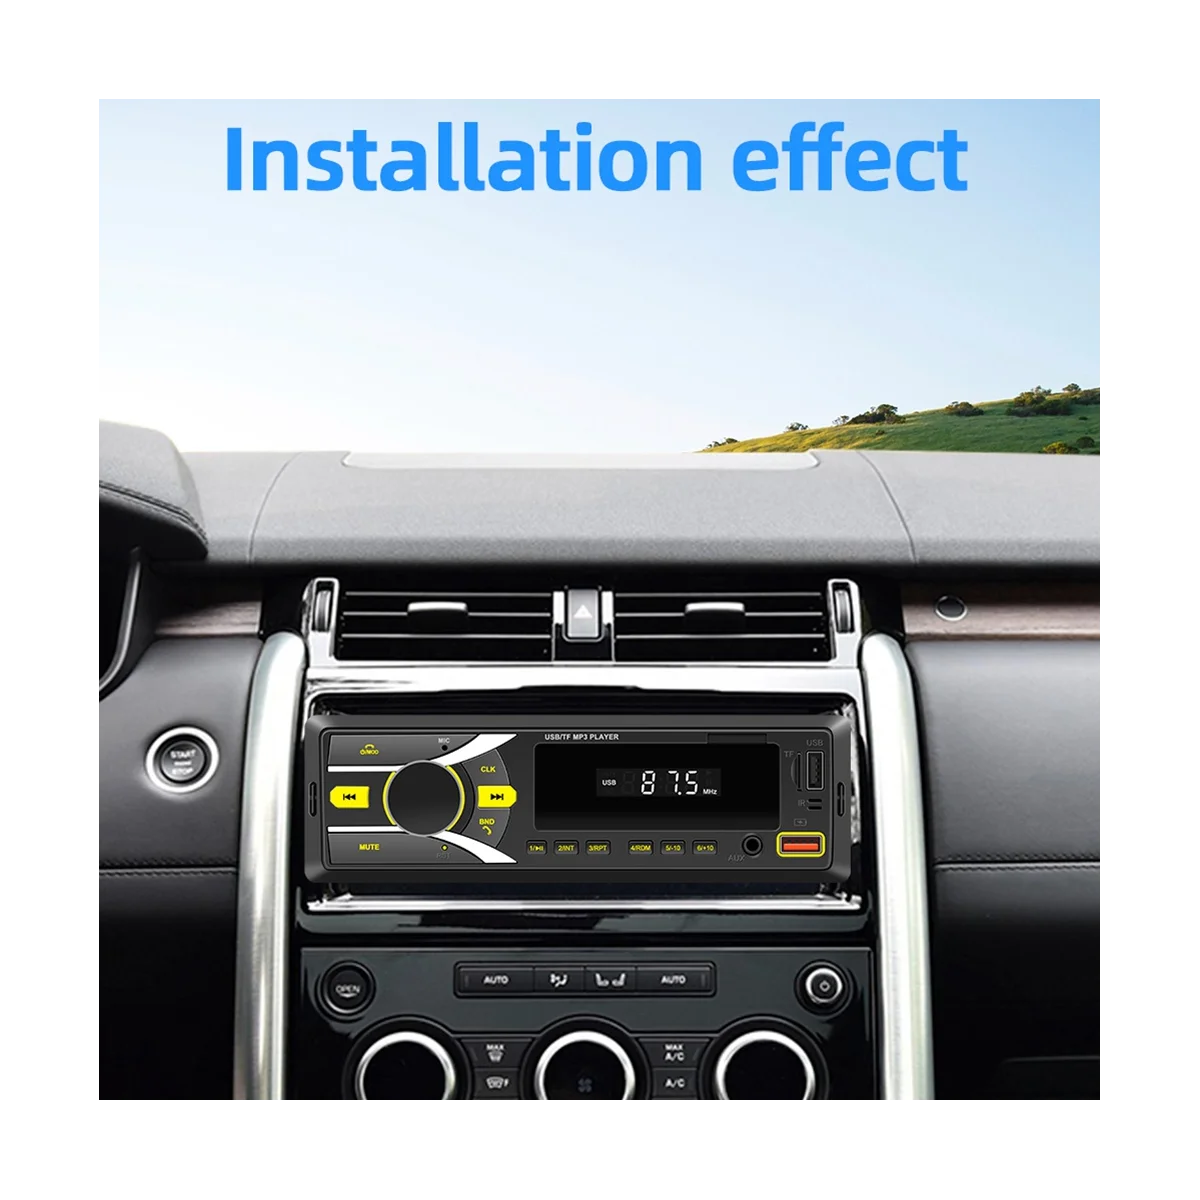 

Автомагнитола, автомобильный стерео MP3-плеер с Bluetooth, один Din, с управлением через приложение, AM, FM-радио, AUX вход, 2USB-радиоприемника